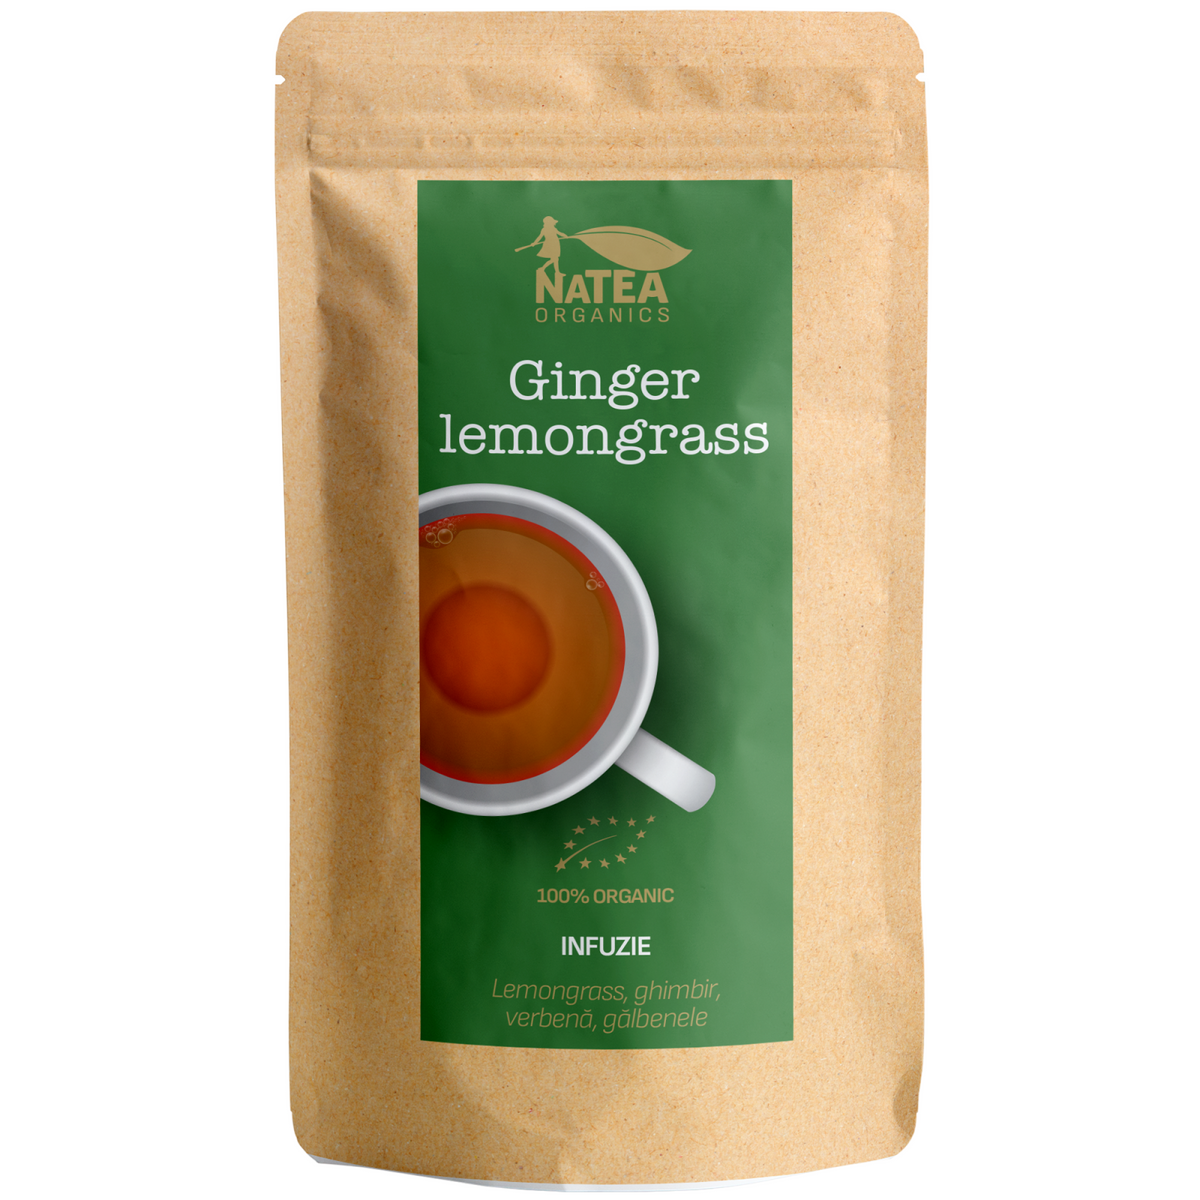 Ceai de lemongrass, ghimbir, verbena, galbenele -  Ginger Lemongrass